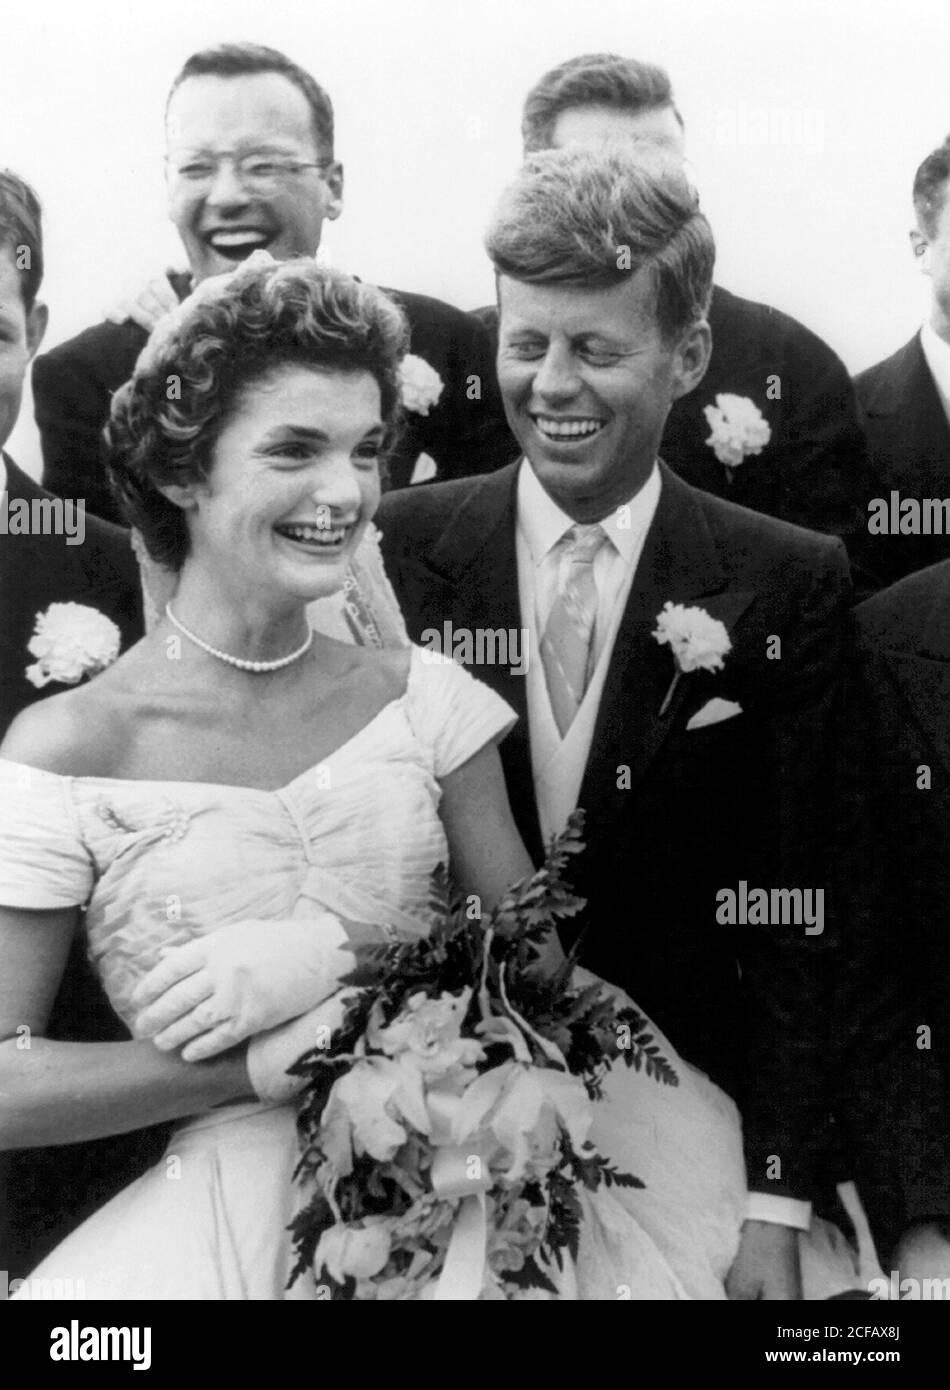 Le mariage du sénateur John F Kennedy à Jacqueline Bouvier, à Newport, dans le Rhode Island, le 12 septembre 1953 Banque D'Images